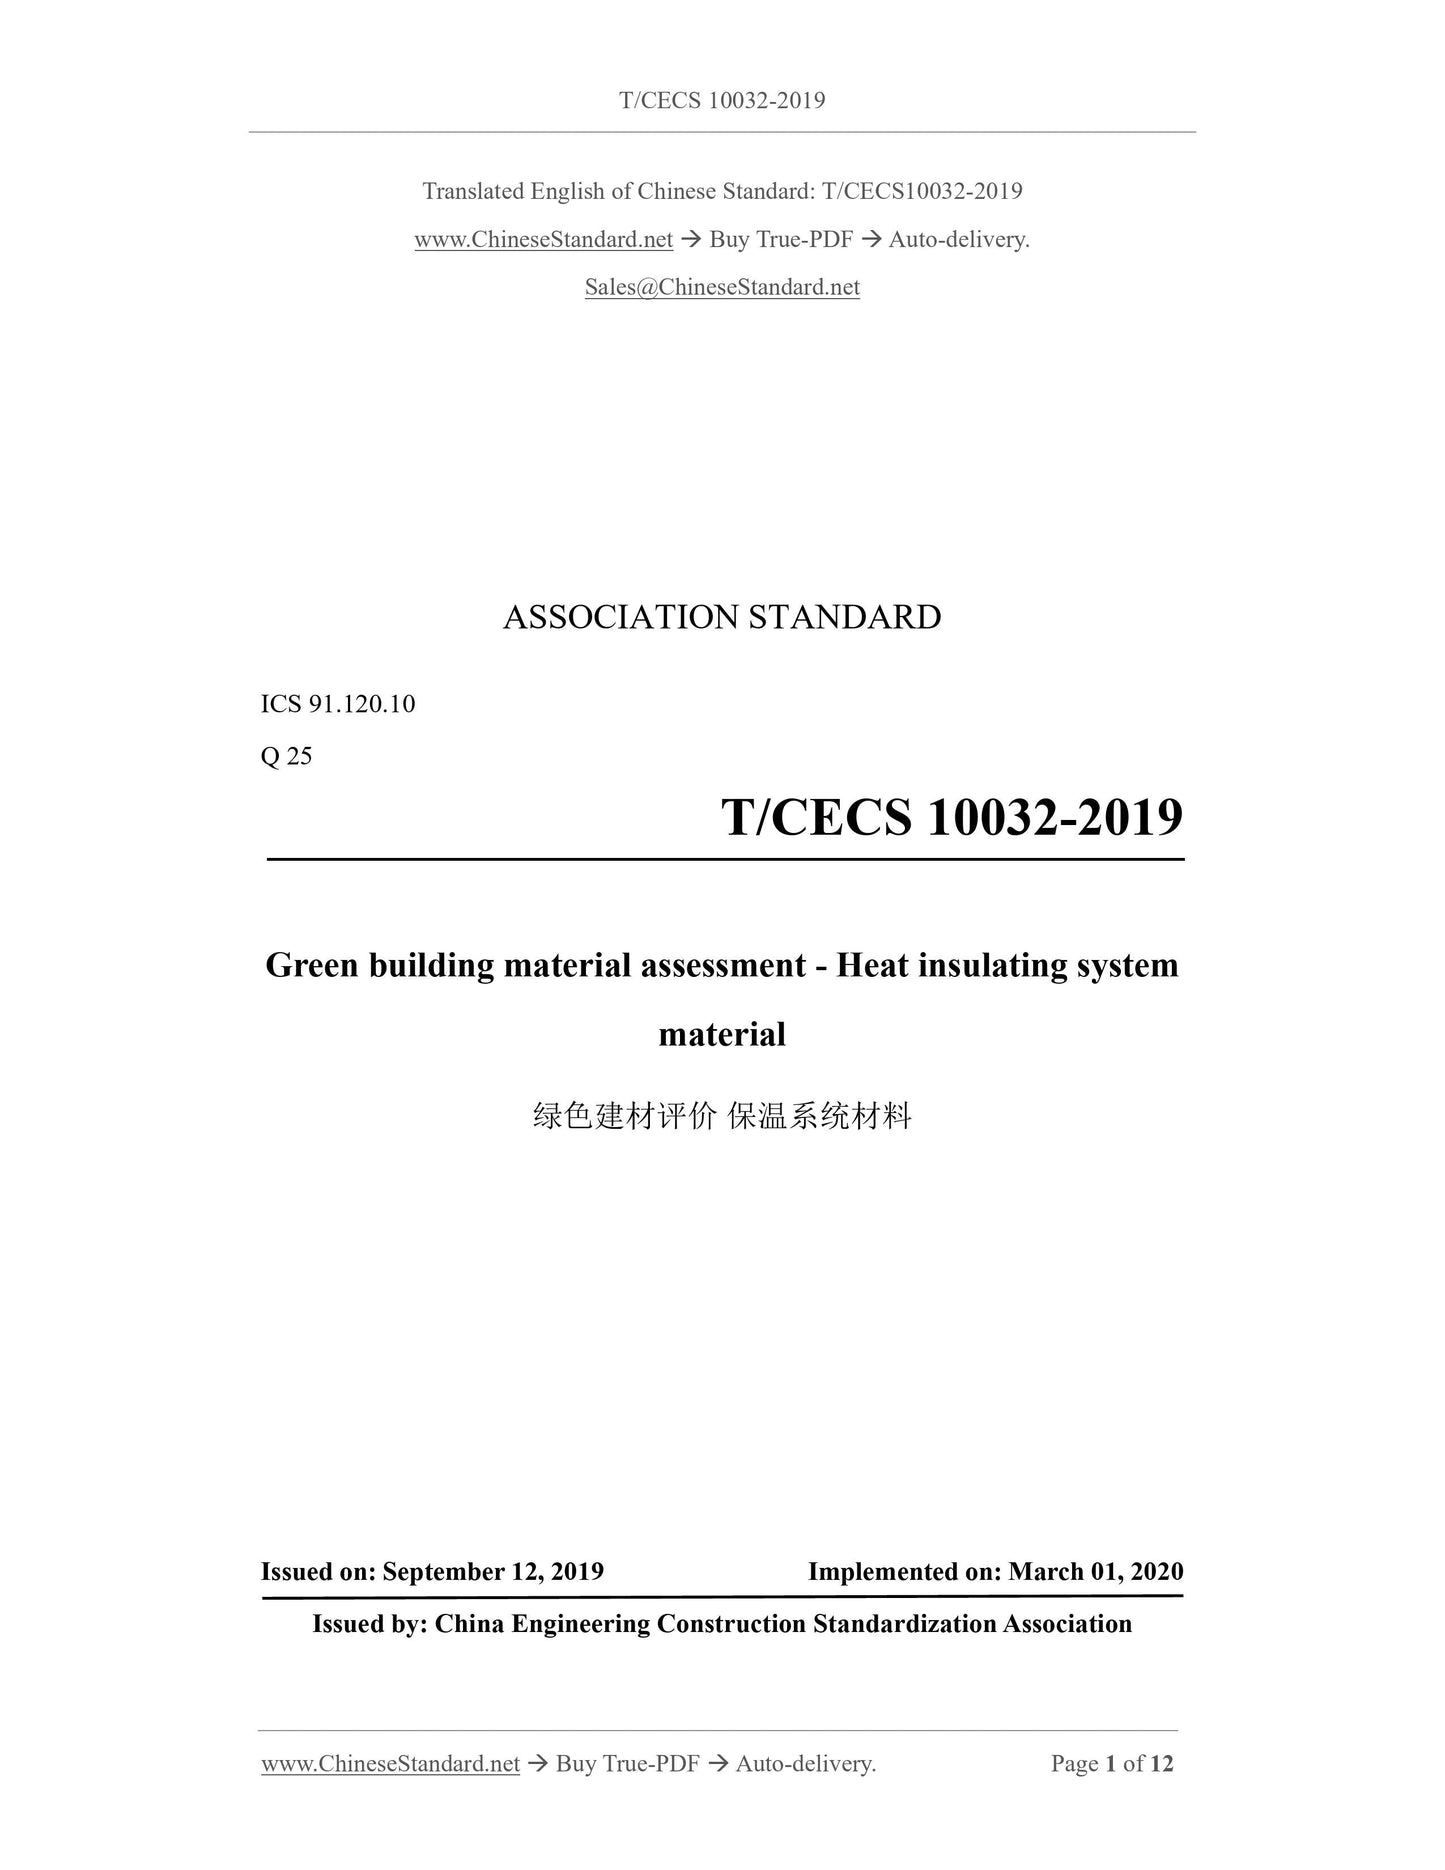 T/CECS 10032-2019 Page 1